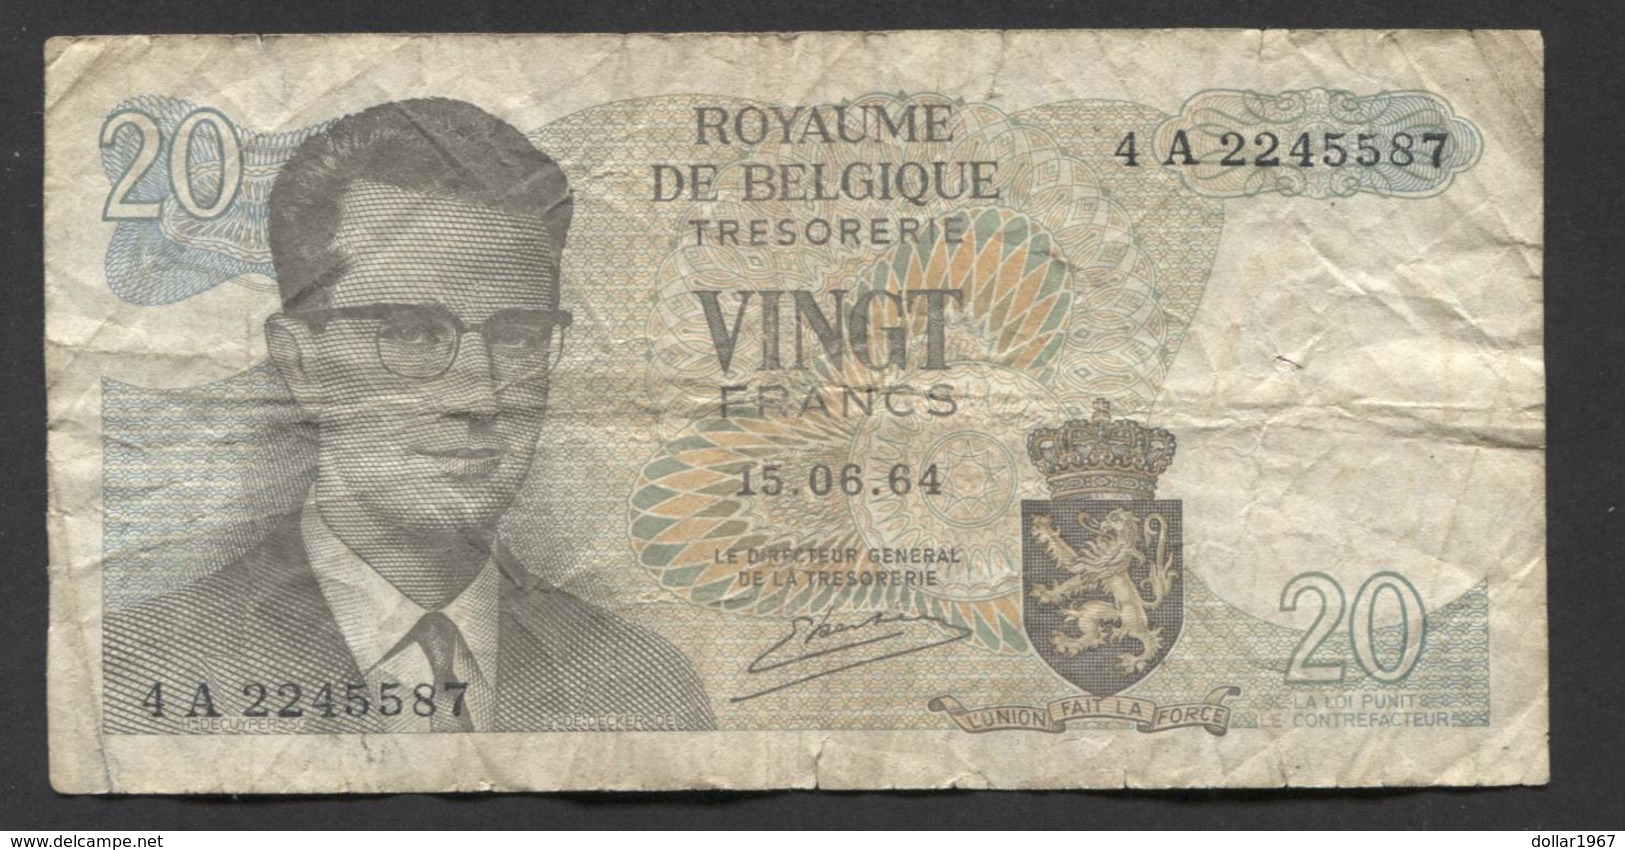 België Belgique Belgium 15 06 1964 -  20 Francs Atomium Baudouin. 4 A 2245587 - 20 Francos